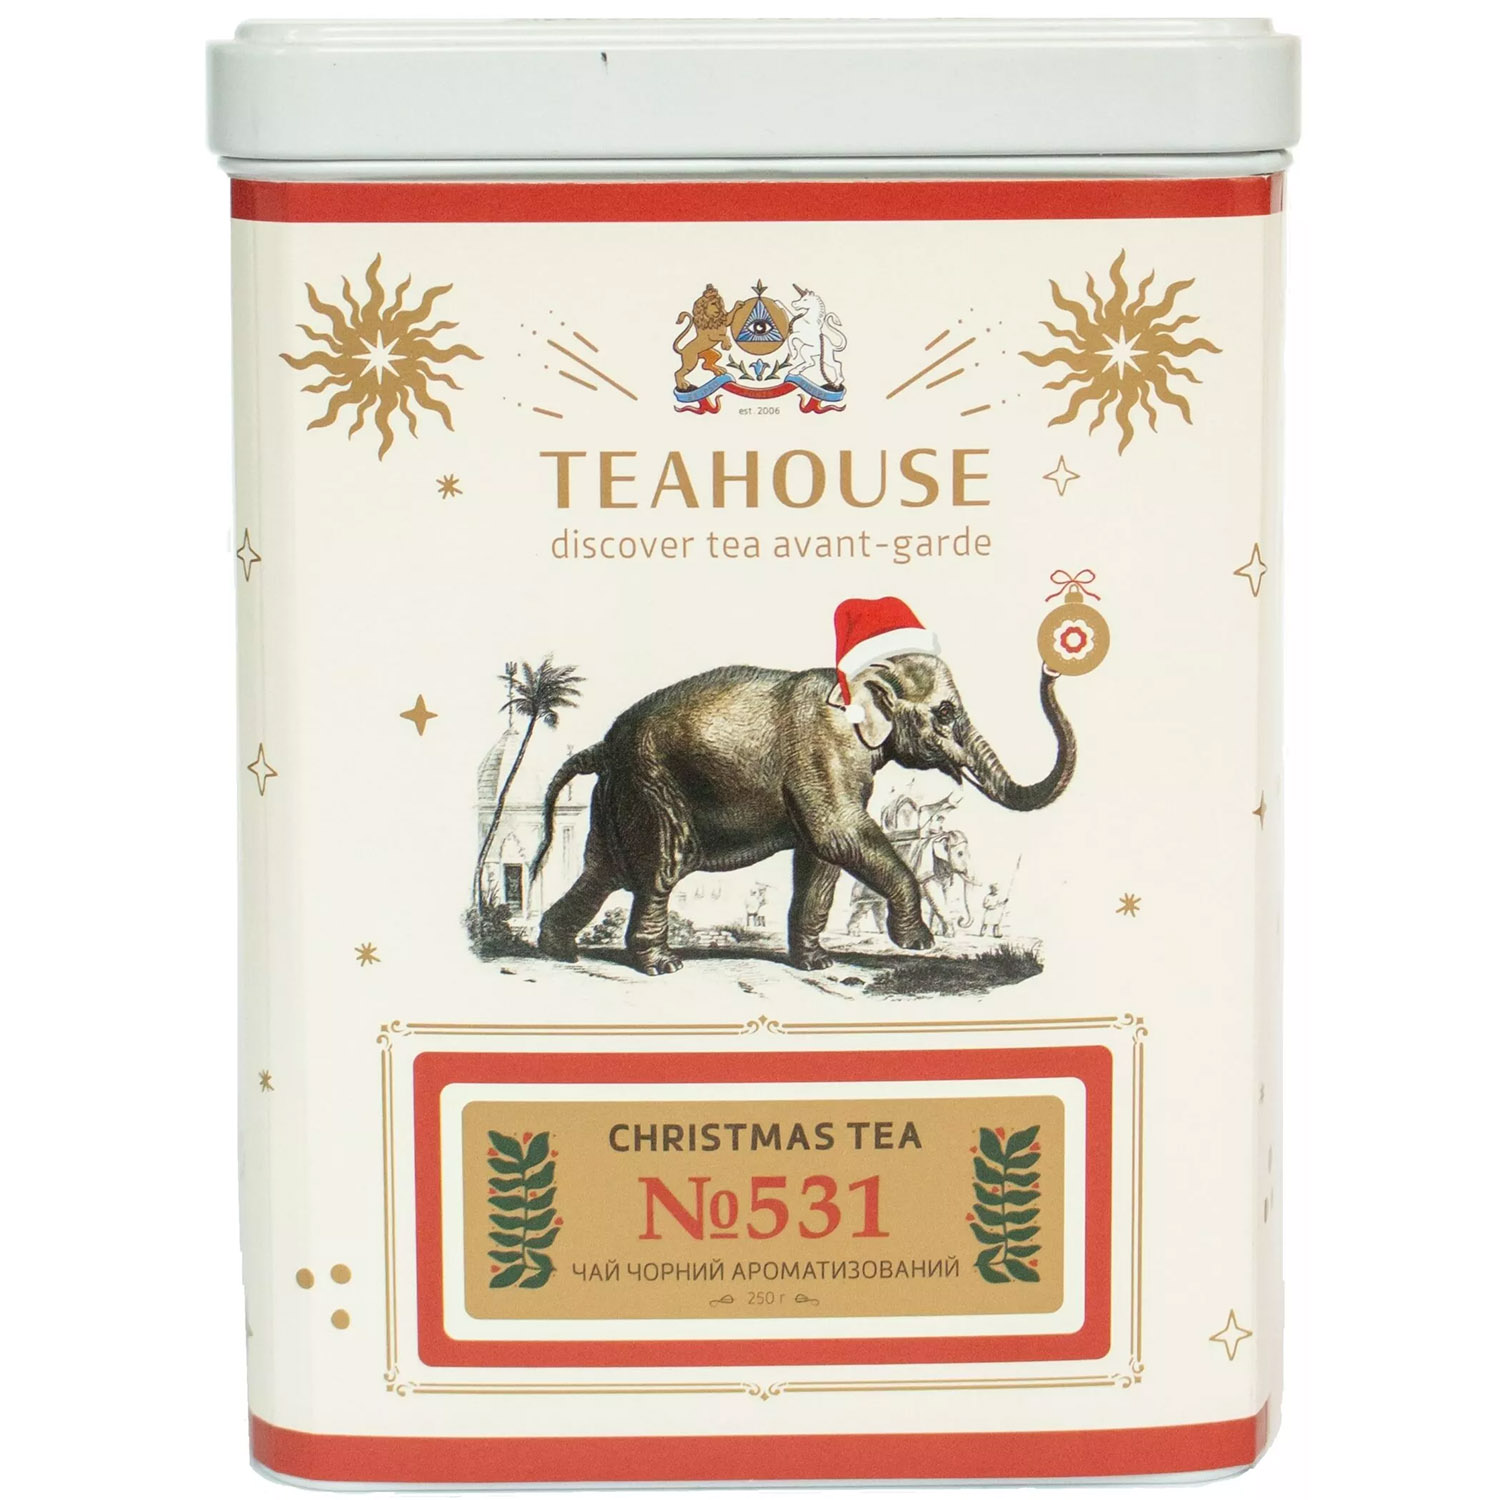 Чай чорний Teahouse Christmas Tea №531, 250 г - фото 1